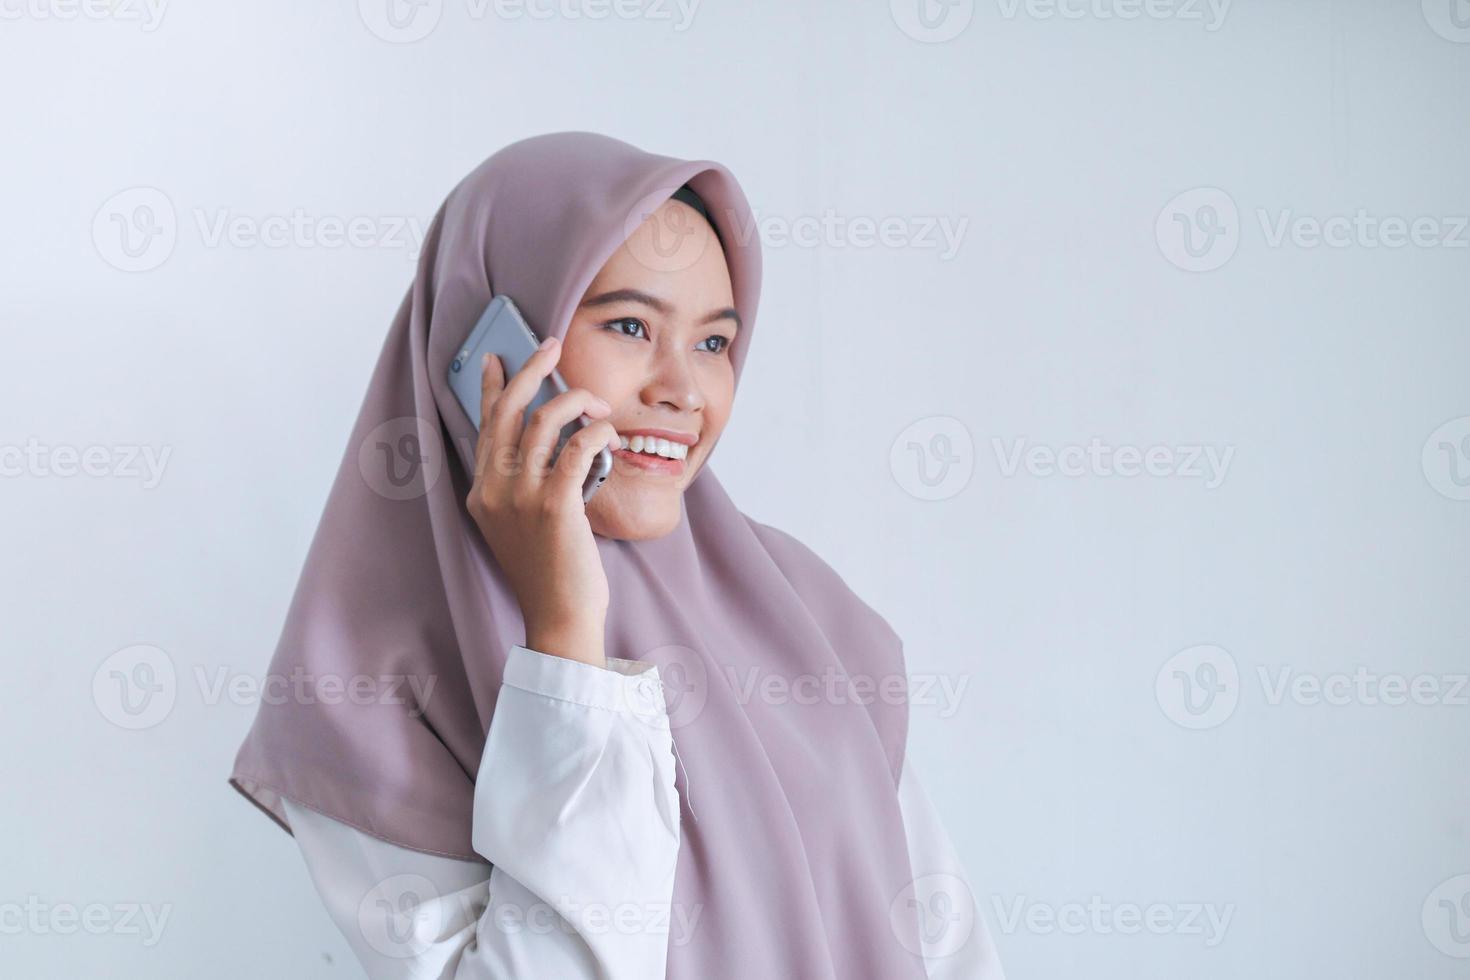 jonge aziatische islamvrouw die een hoofddoek draagt, is blij en glimlacht wanneer ze aan de telefoon praat. Indonesische vrouw op grijze achtergrond foto